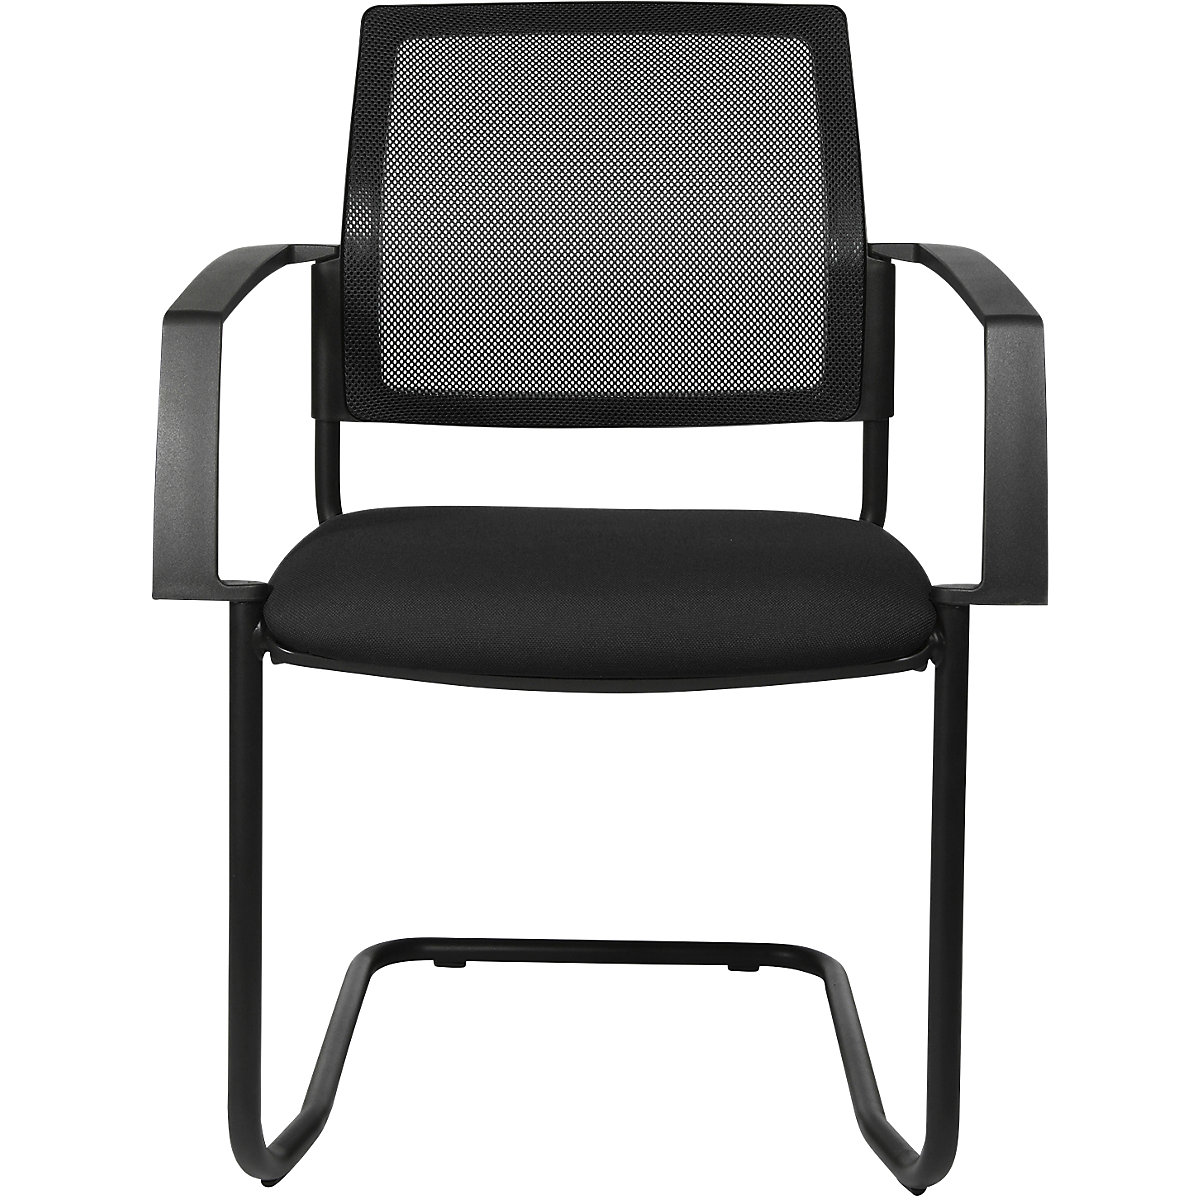 Složiva stolica s mrežastim naslonom – Topstar, konzolna stolica, pak. 2 kom., sjedalo u crnoj boji, postolje u crnoj boji